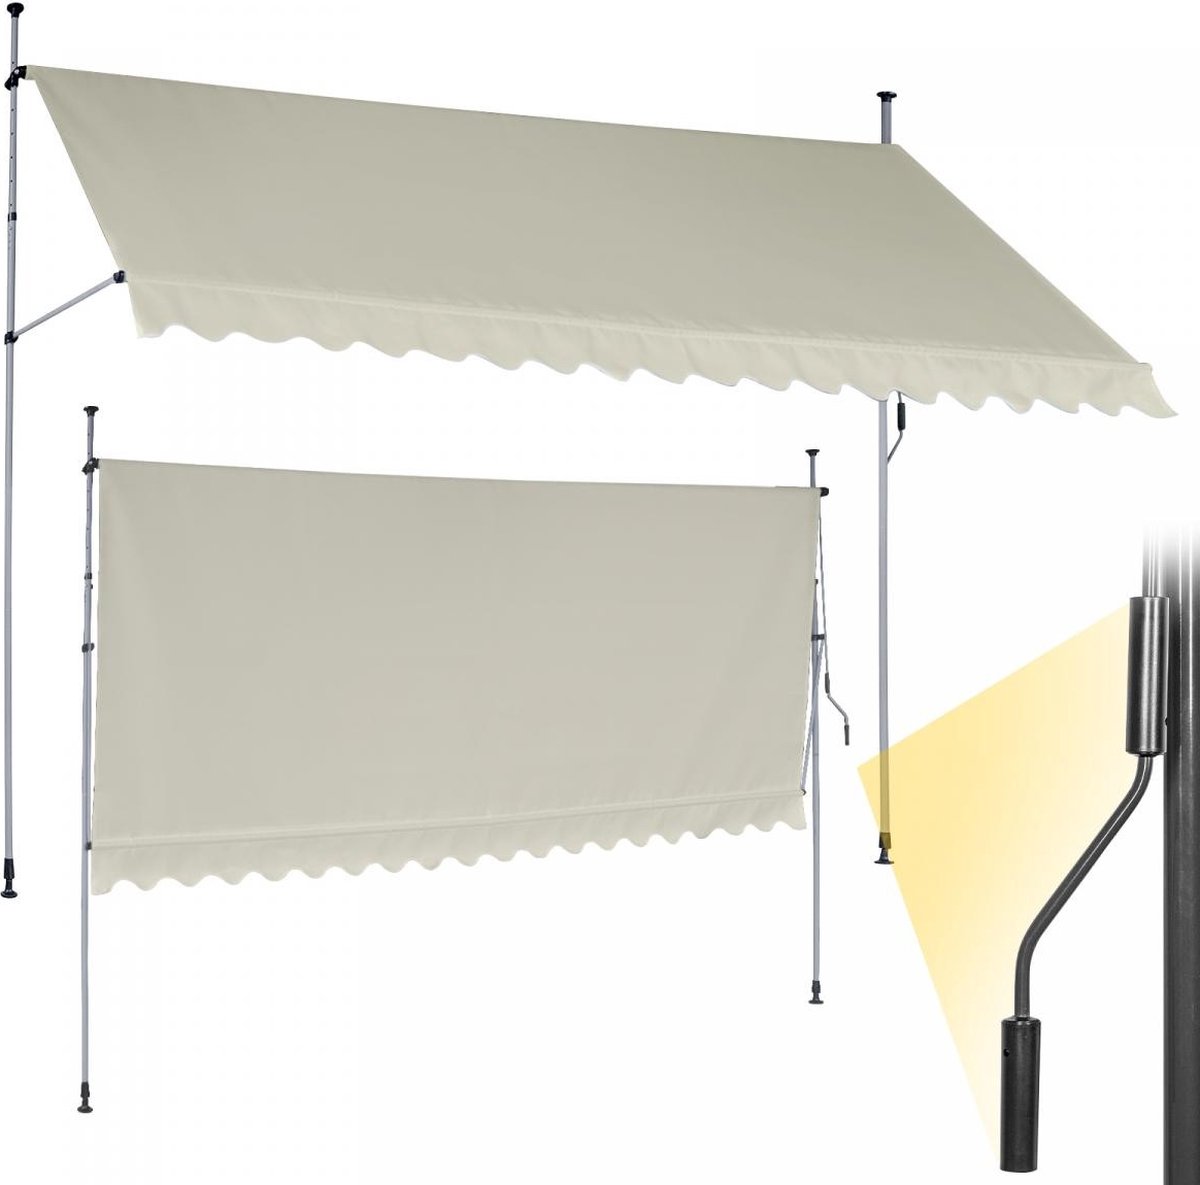 GoodVibes - In Hoogte Verstelbare Luifel met UV-bescherming en Slinger - 400x80 cm - Waterafstotend voor op het Balkon of Terras - Zonbescherming - Zonnescherm - Terrasluifel - Beige